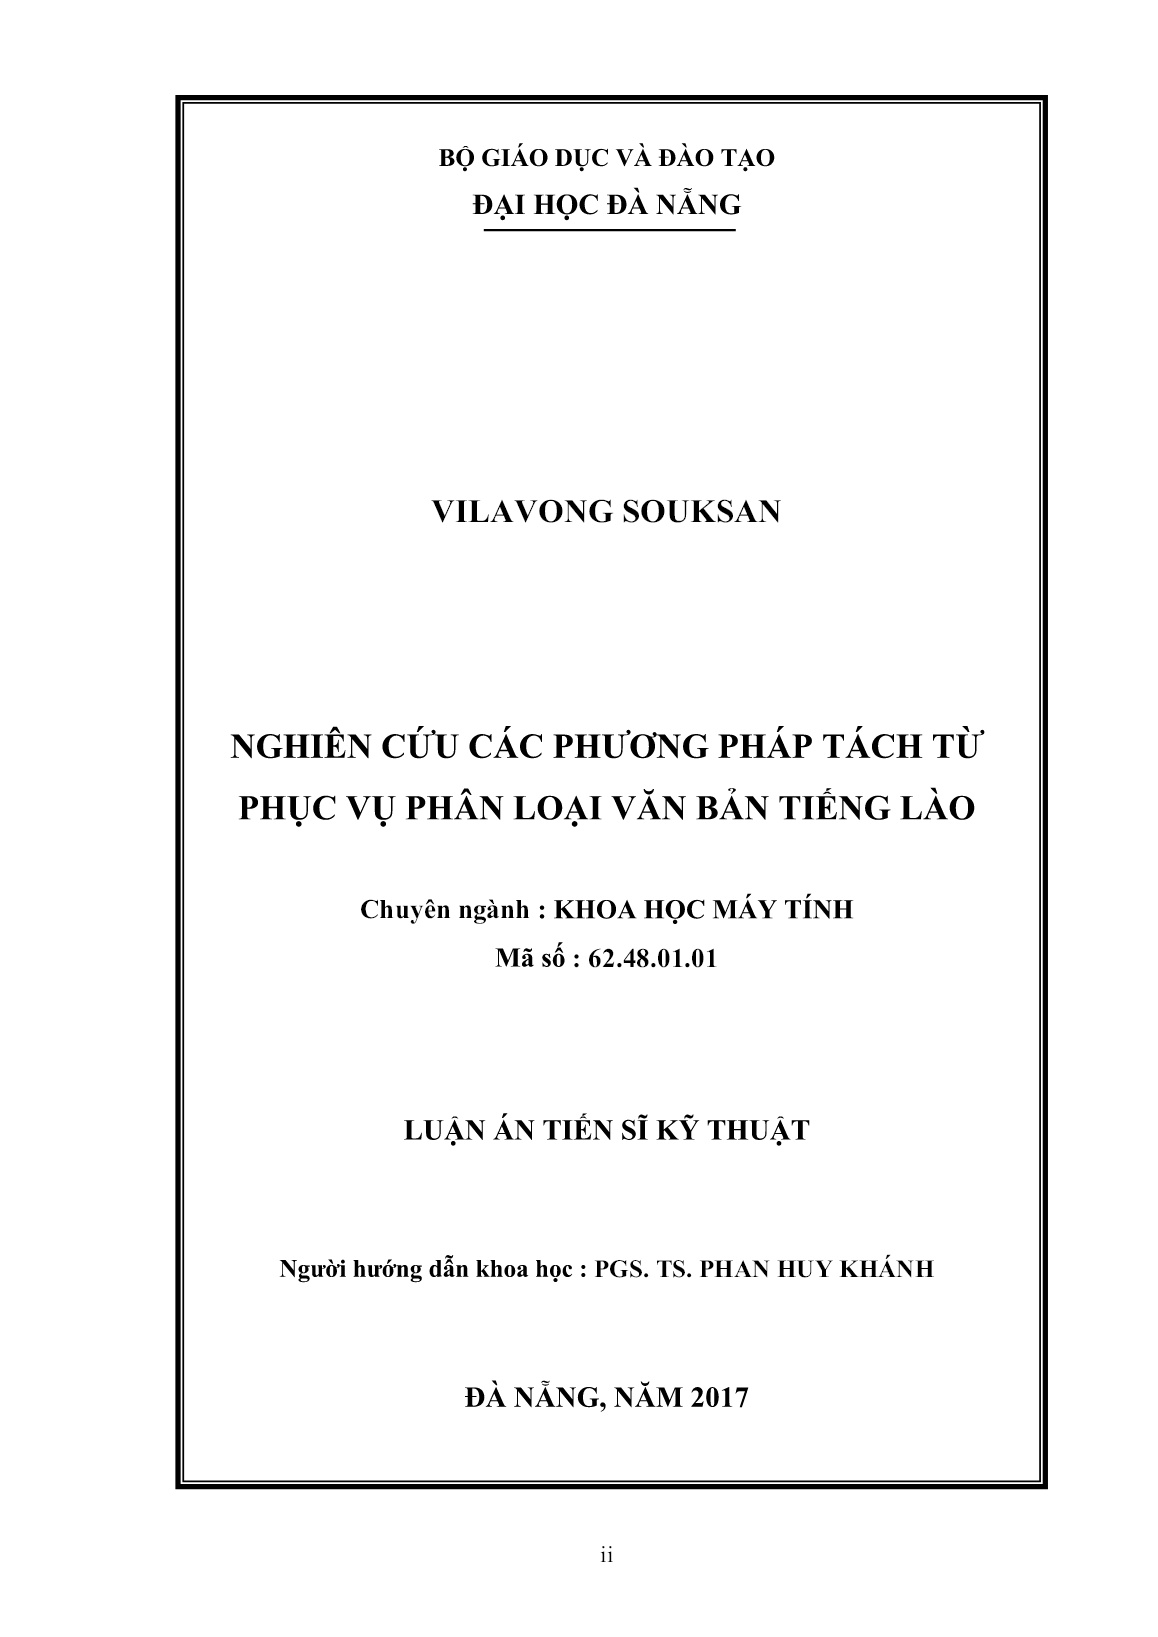 Luận án Nghiên cứu các phương pháp tách từ phục vụ phân loại văn bản tiếng Lào trang 2